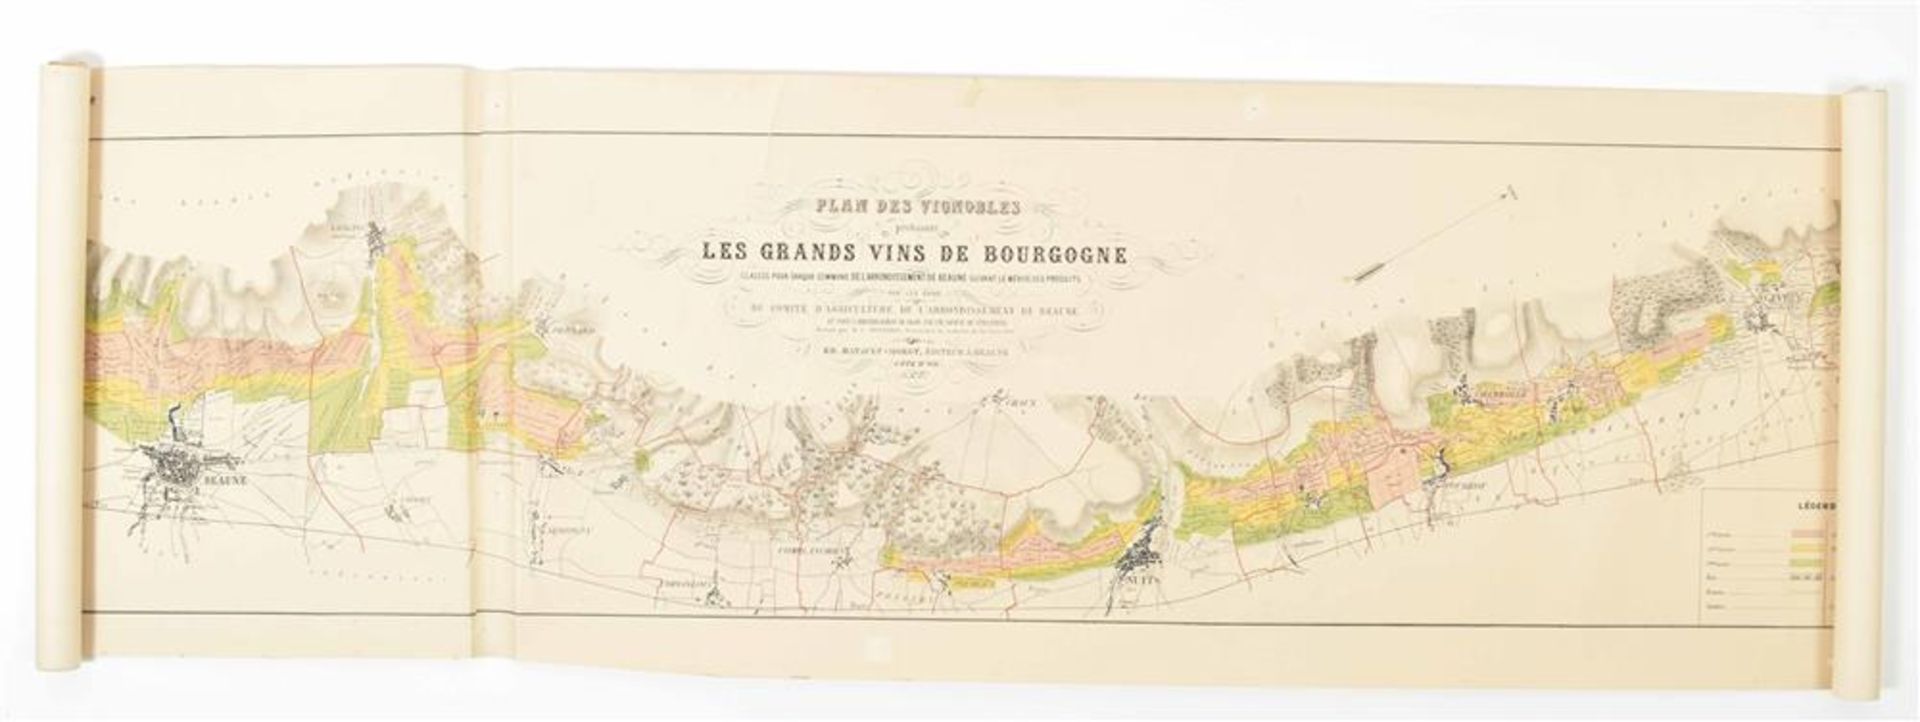 [France. Wine] Plan des vignobles produisant les grands vins de Bourgogne - Image 3 of 6